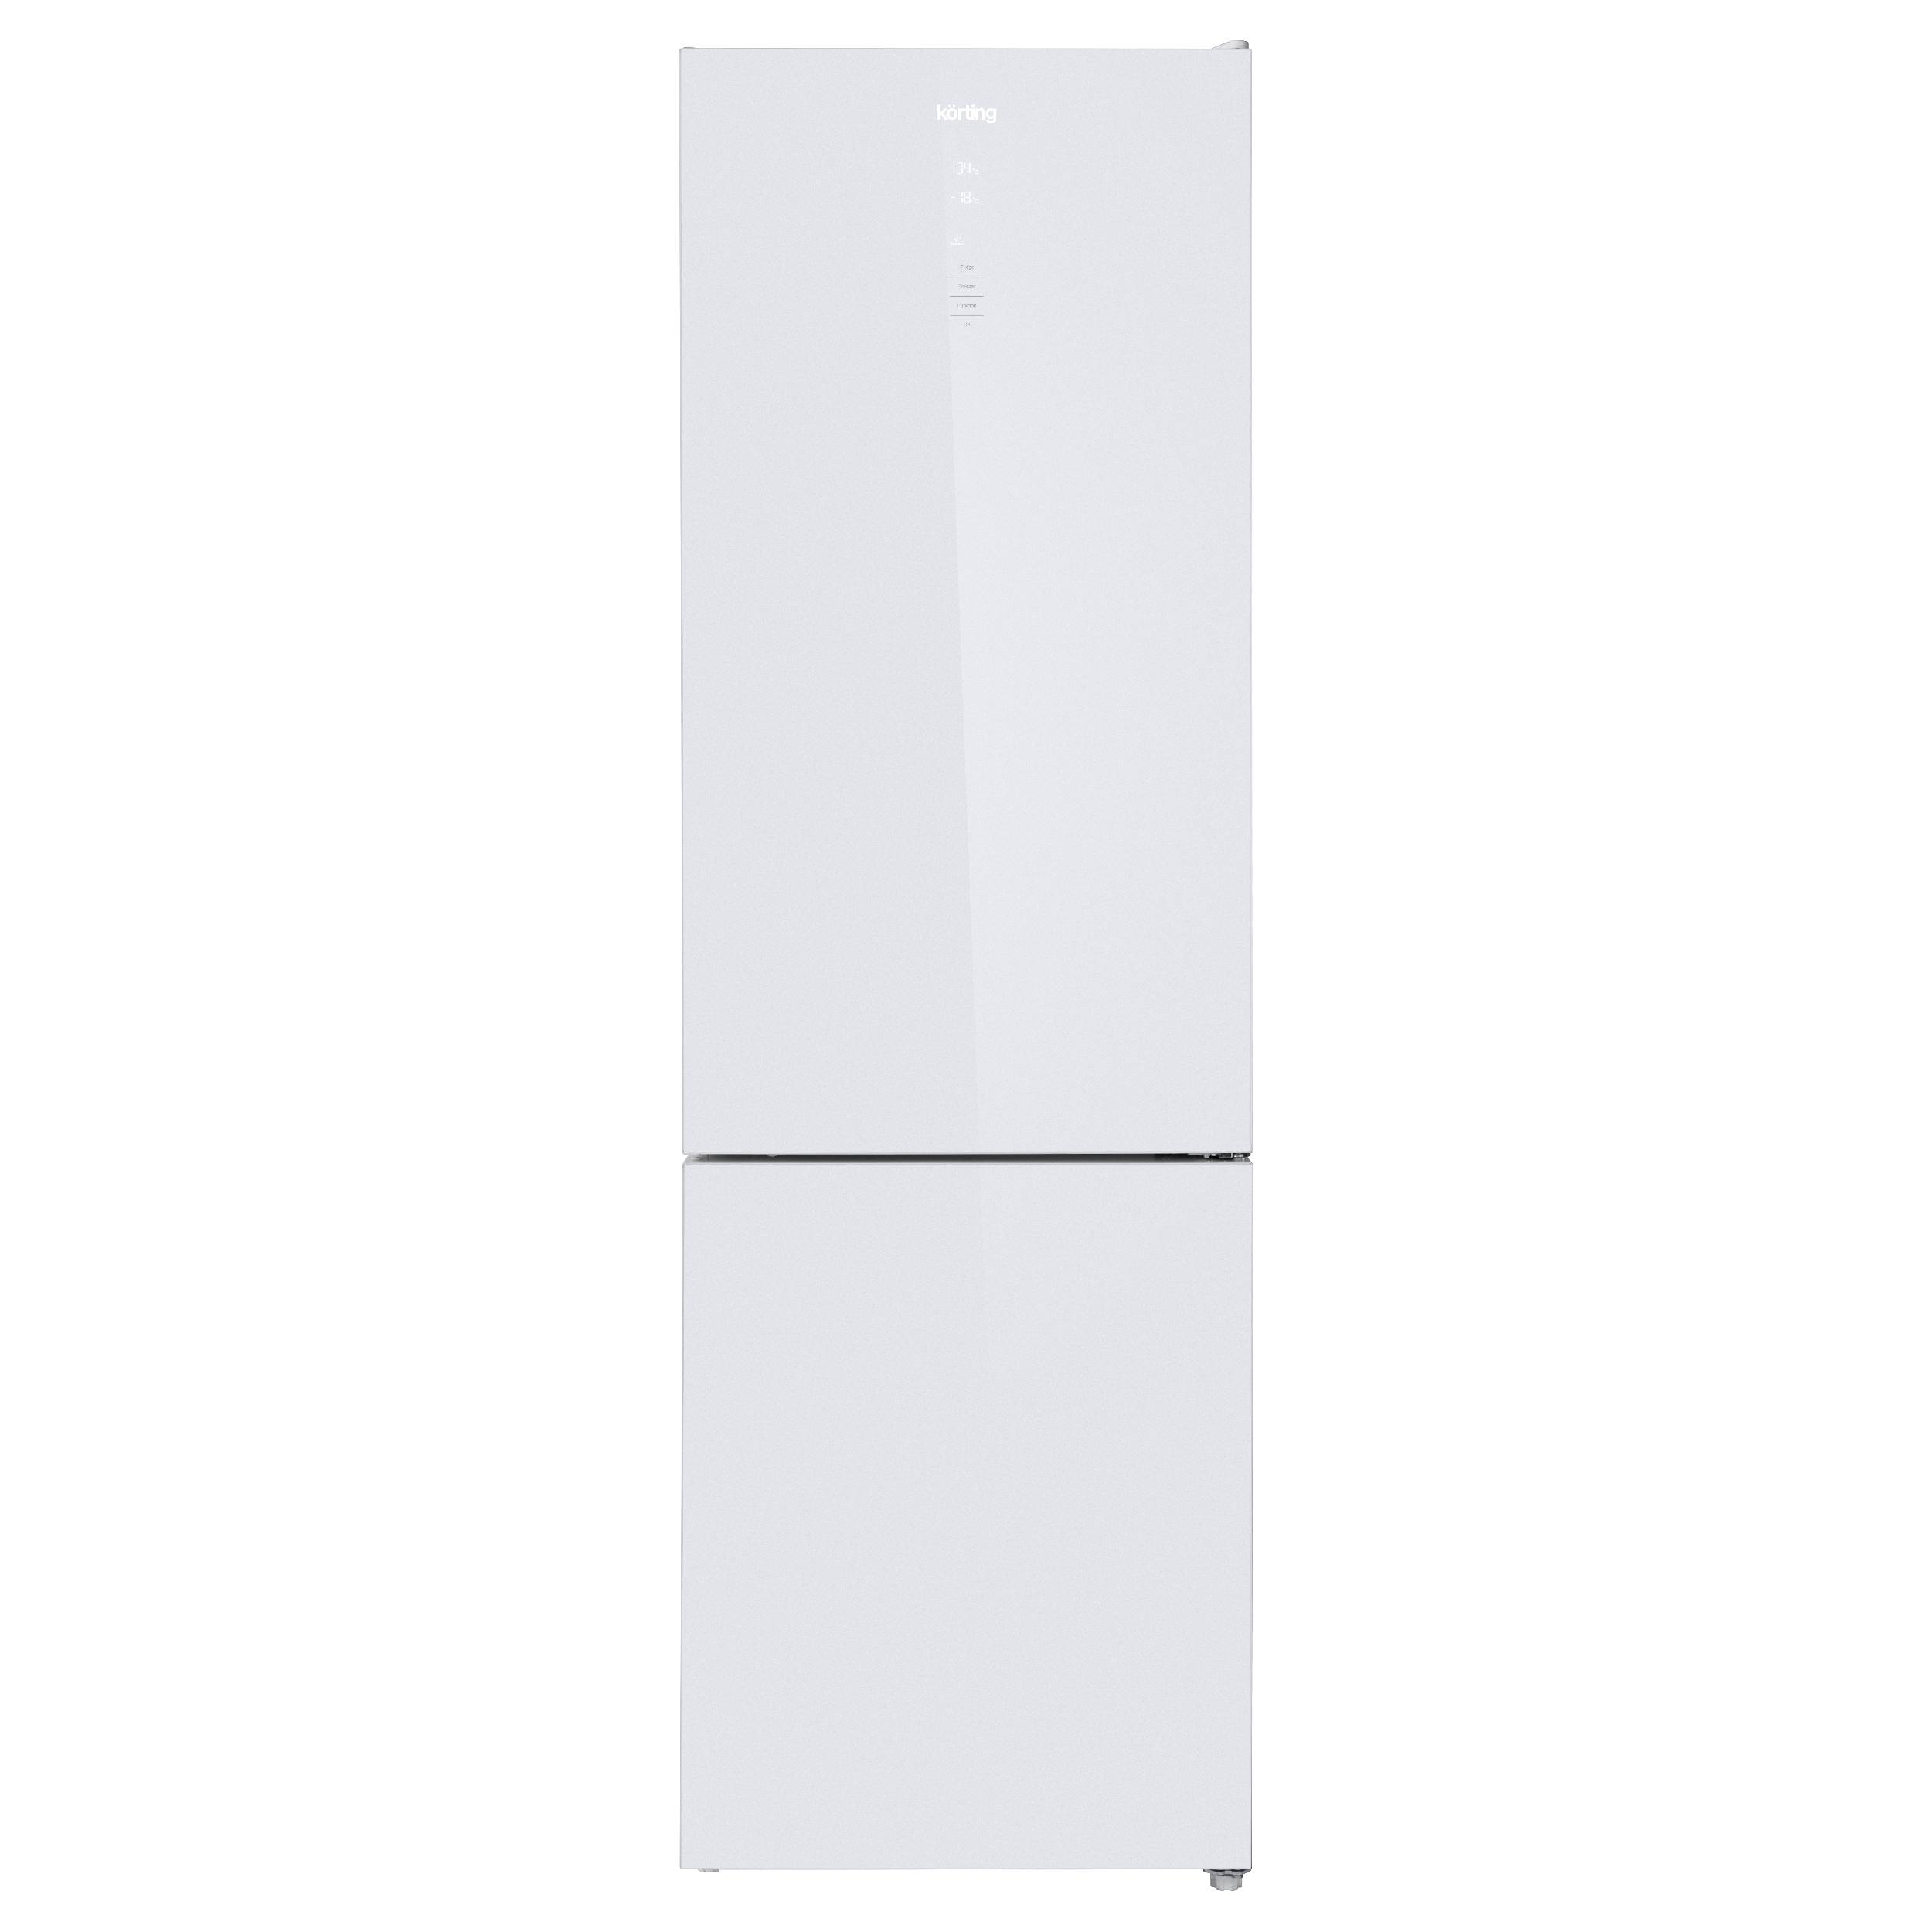 Холодильник Korting KNFC 62370 GW белый, серебристый холодильник korting knfc 62370 gw белый серебристый